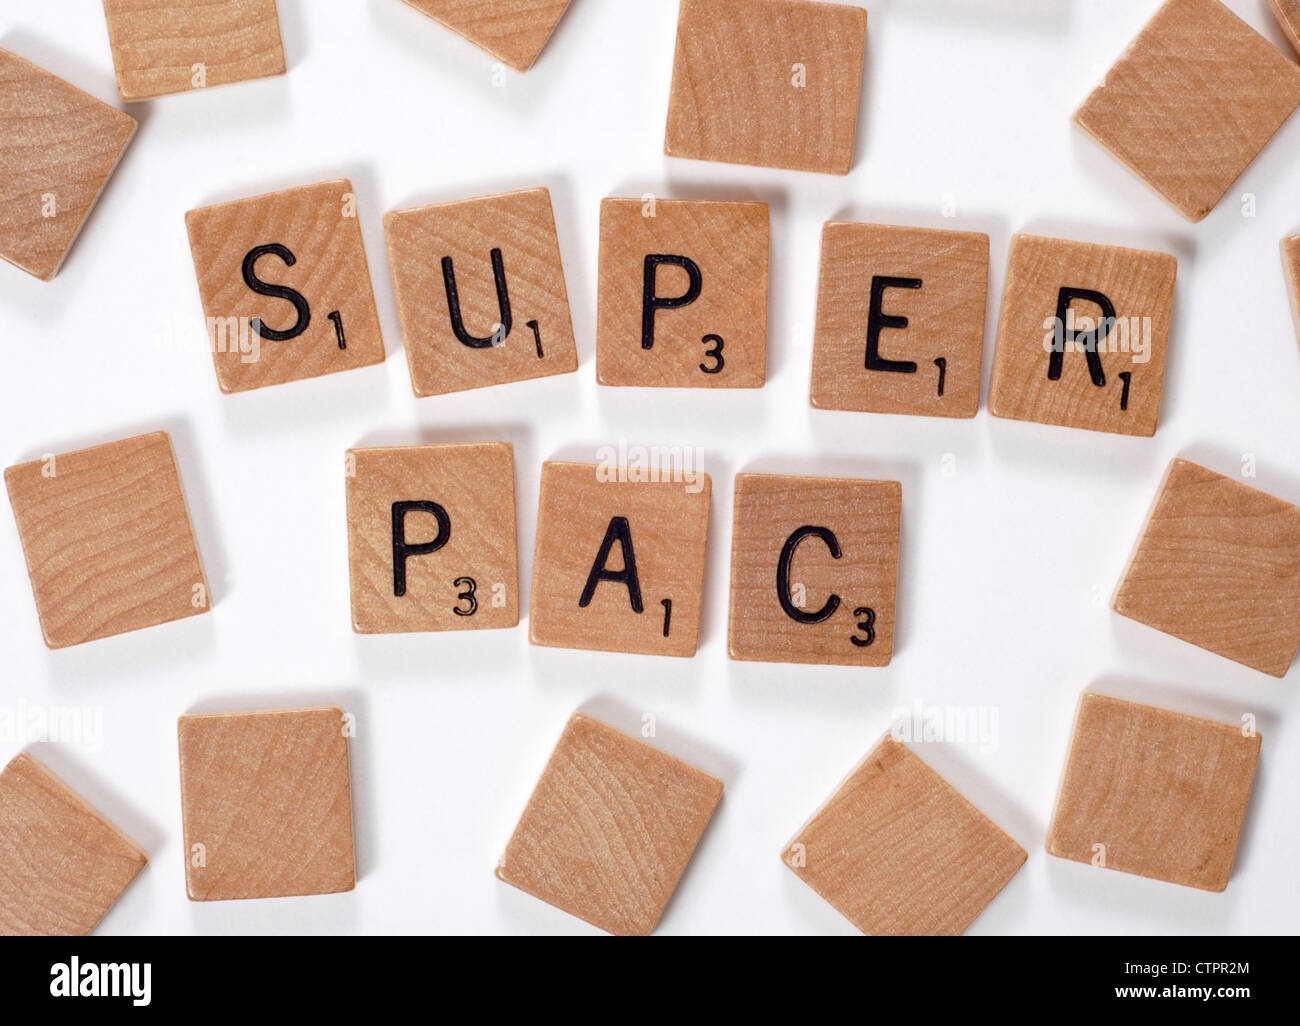 Neues Wort aus einem Wörterbuch: Superpac, ausgeschrieben mit Holzfliesen Stockfoto